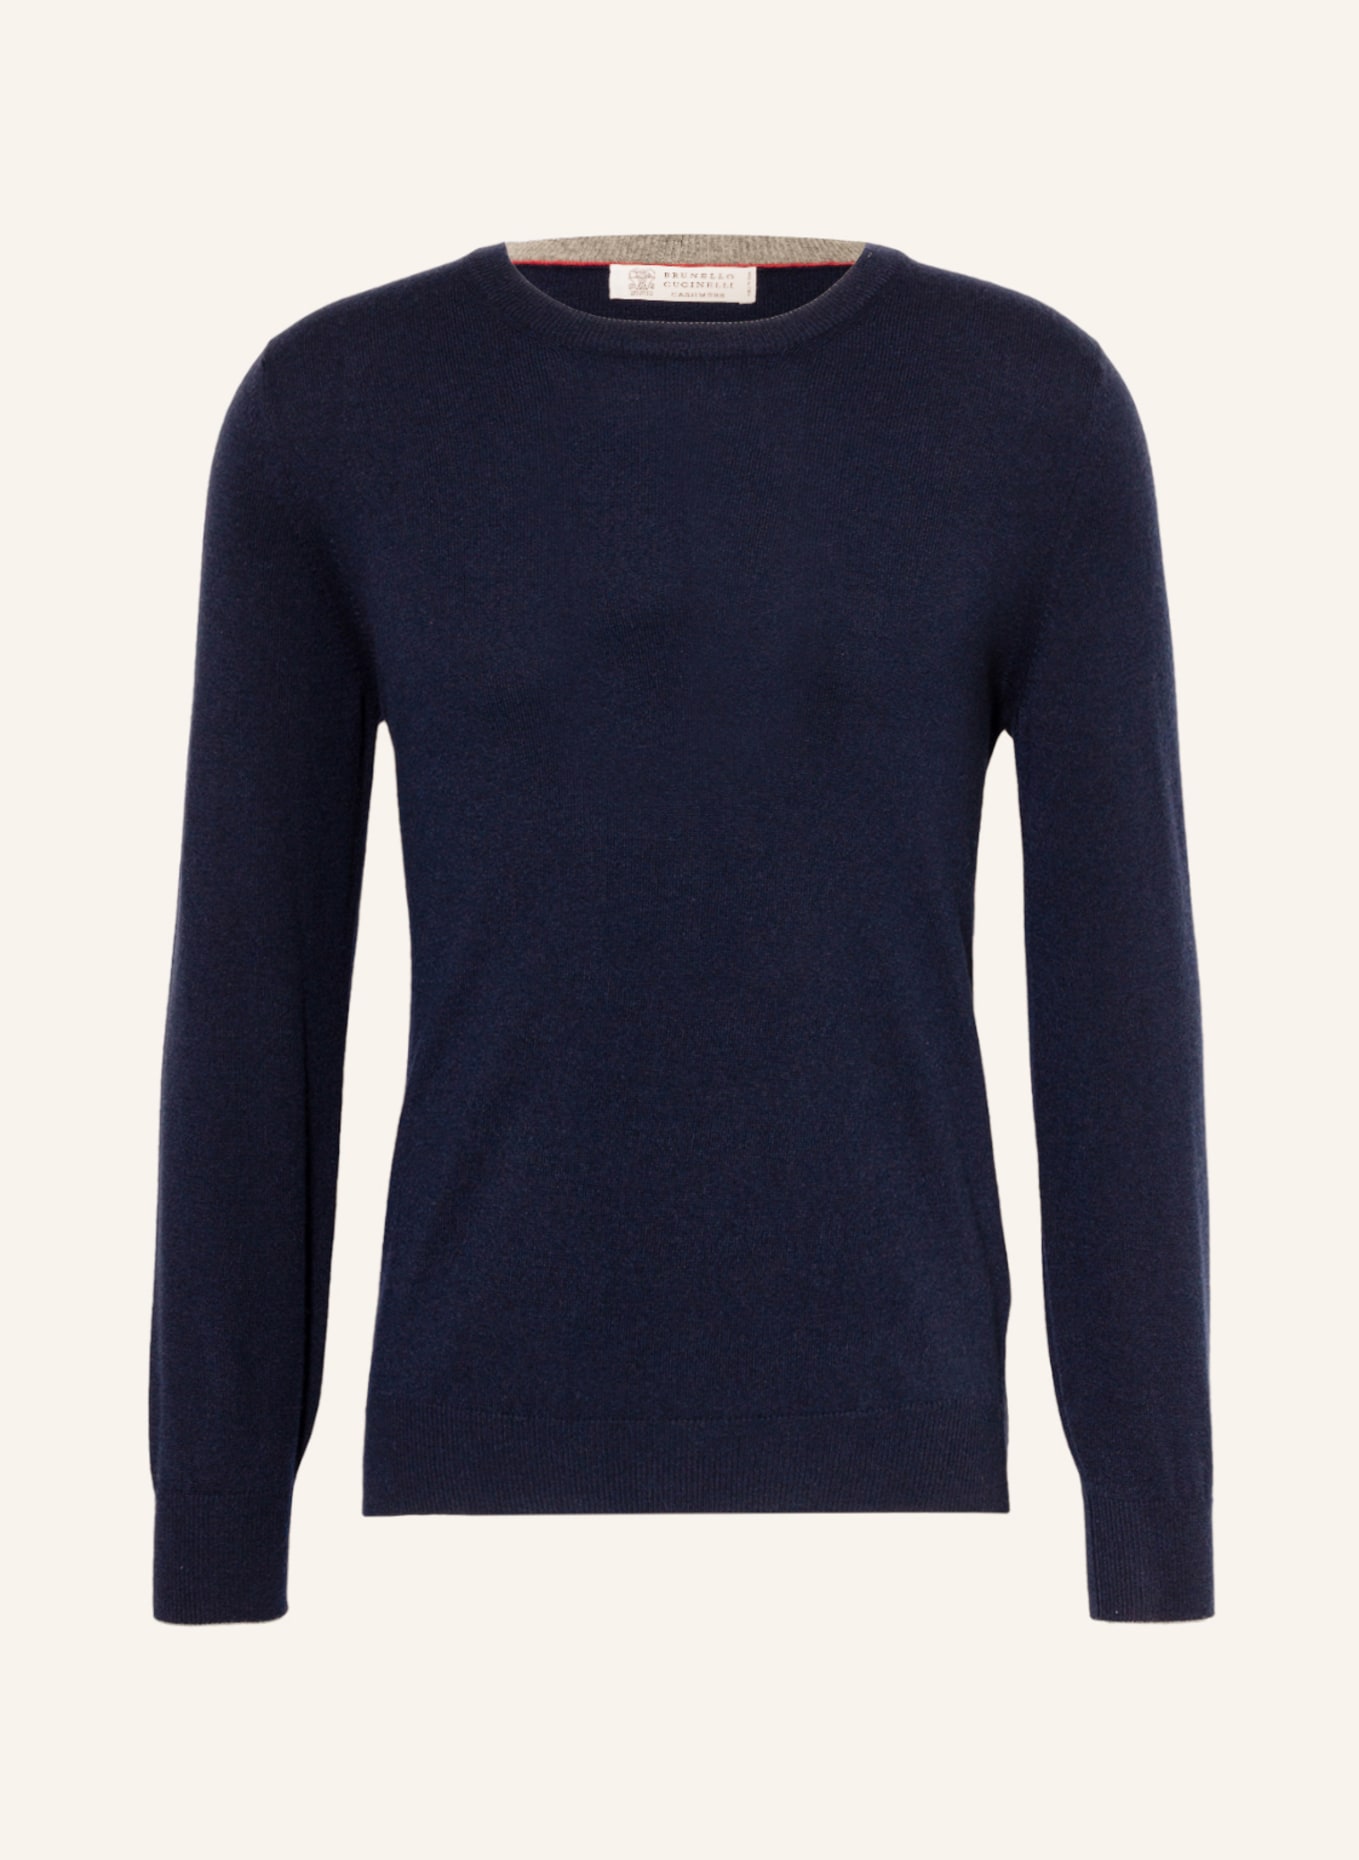 BRUNELLO CUCINELLI Cashmere-Pullover, Farbe: DUNKELBLAU (Bild 1)